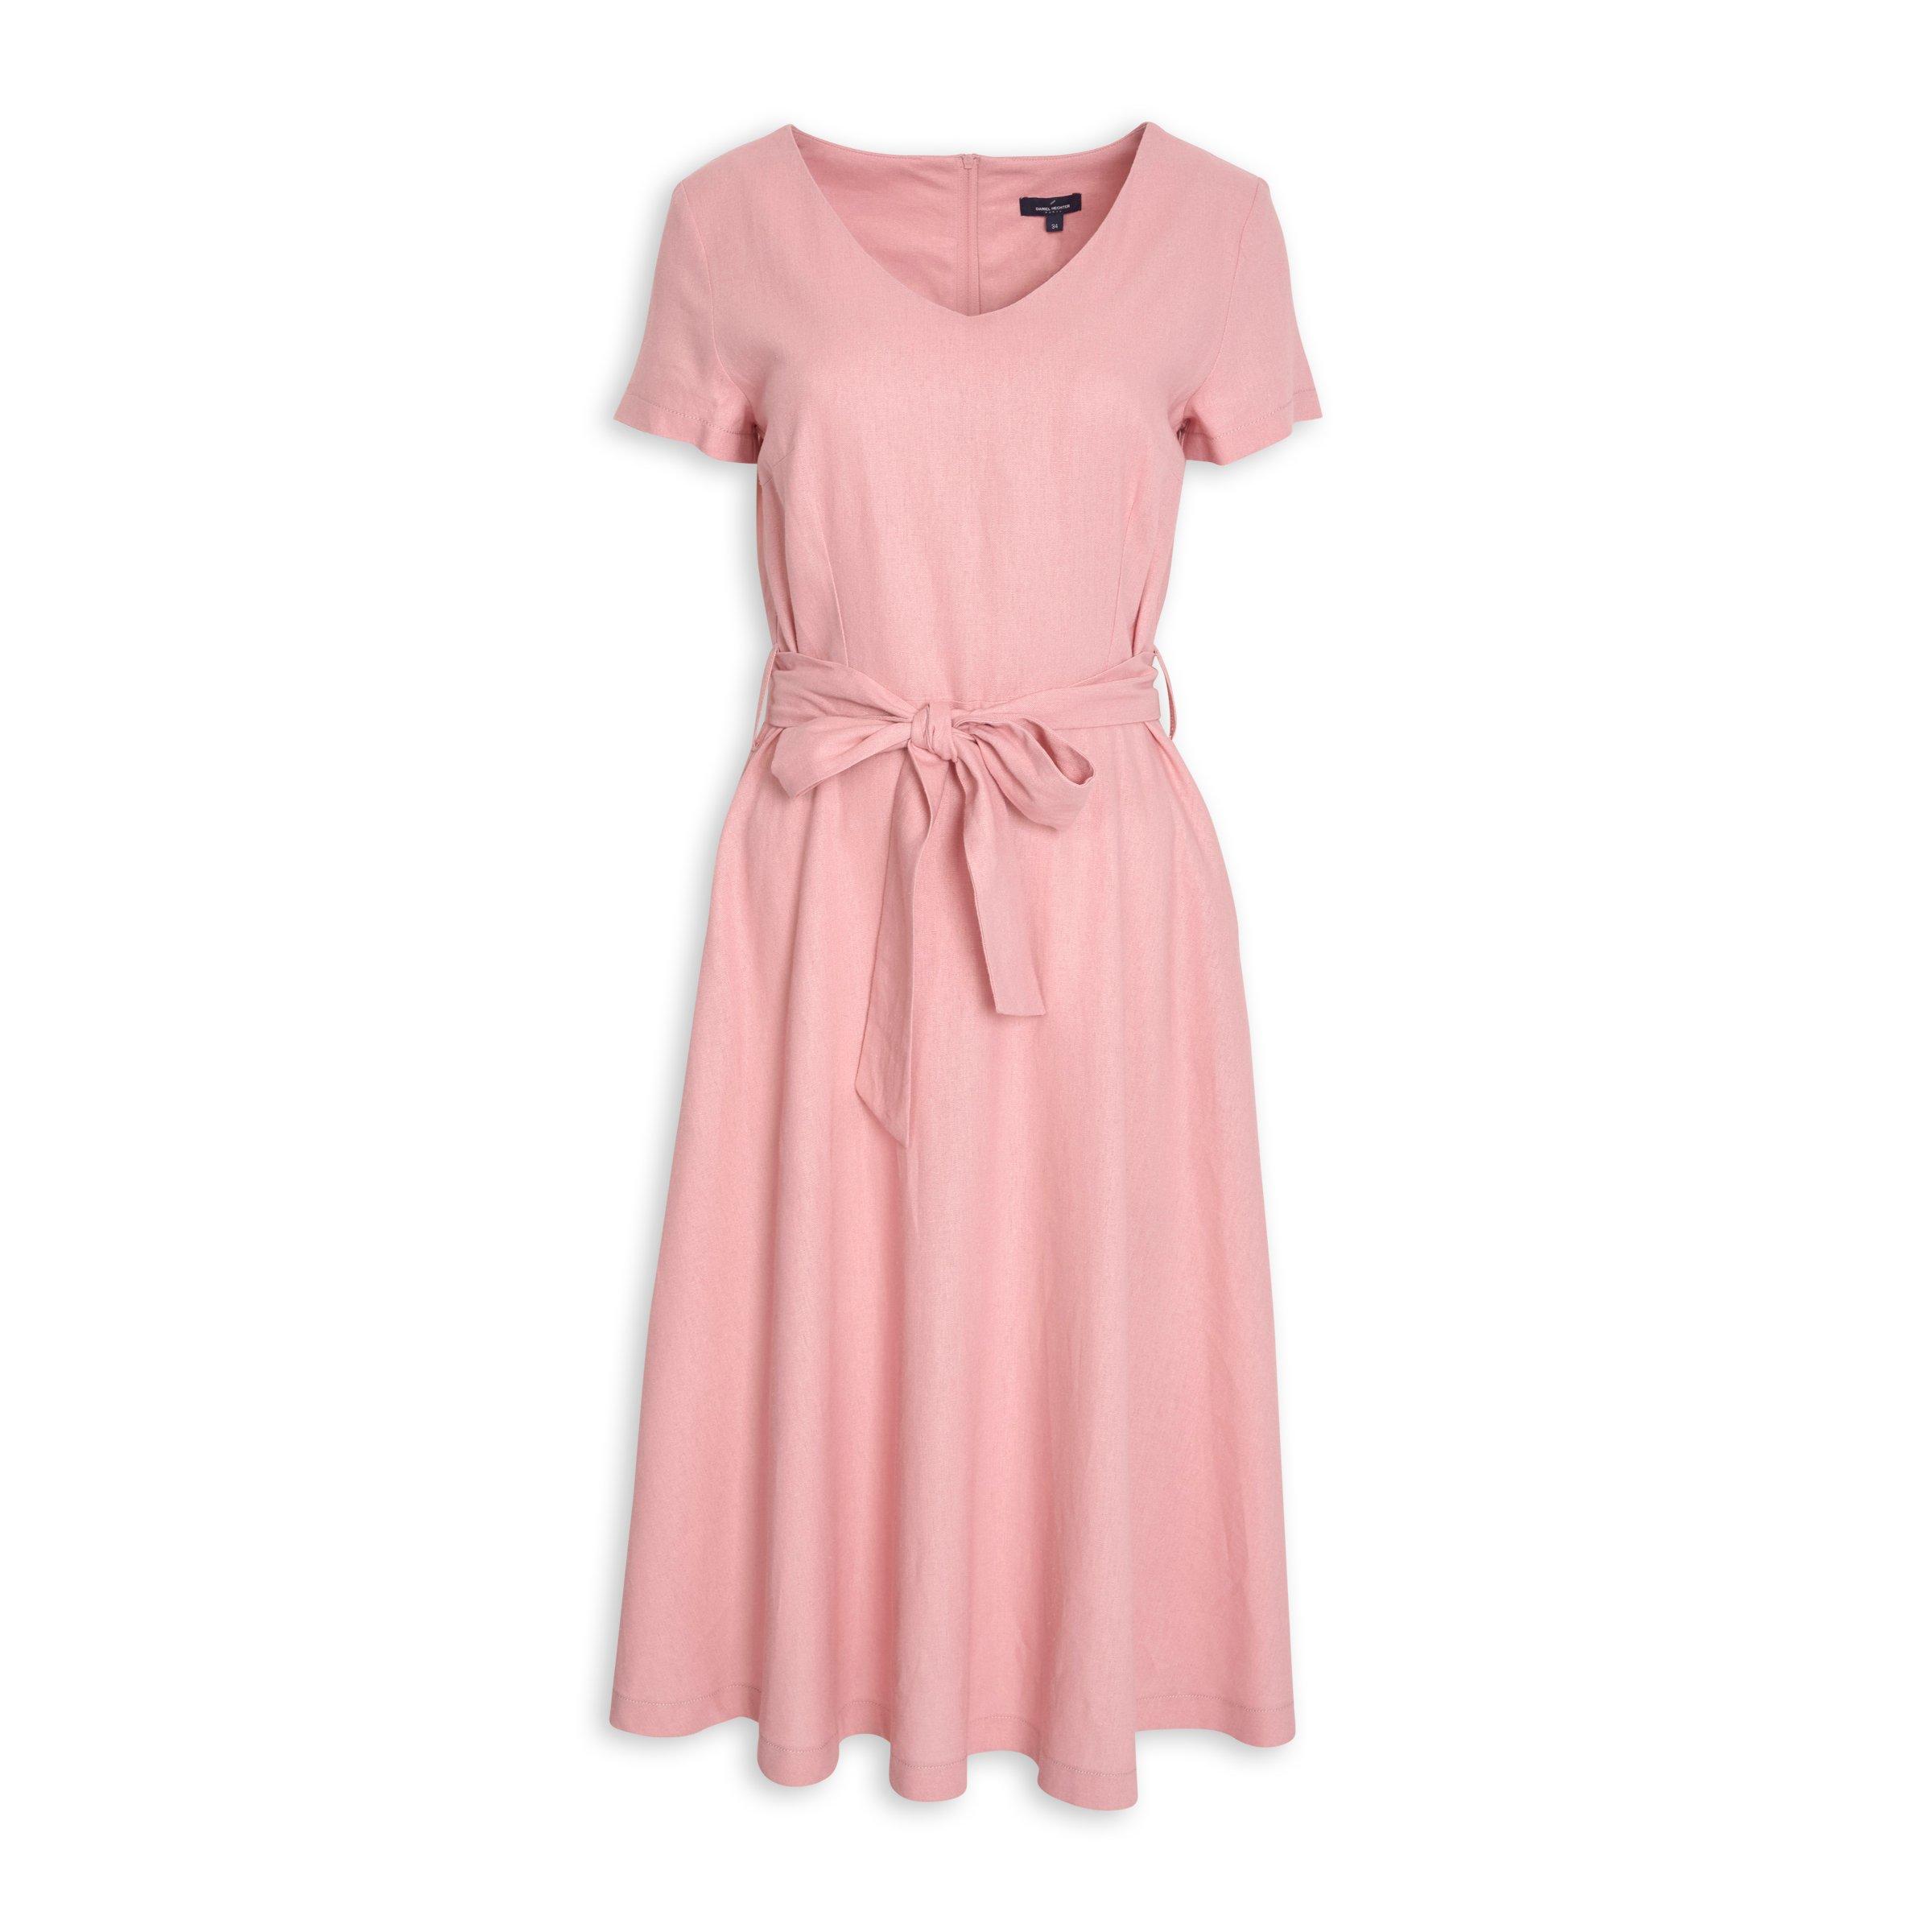 Buy Daniel Hechter Pink Linen Dress Online Truworths